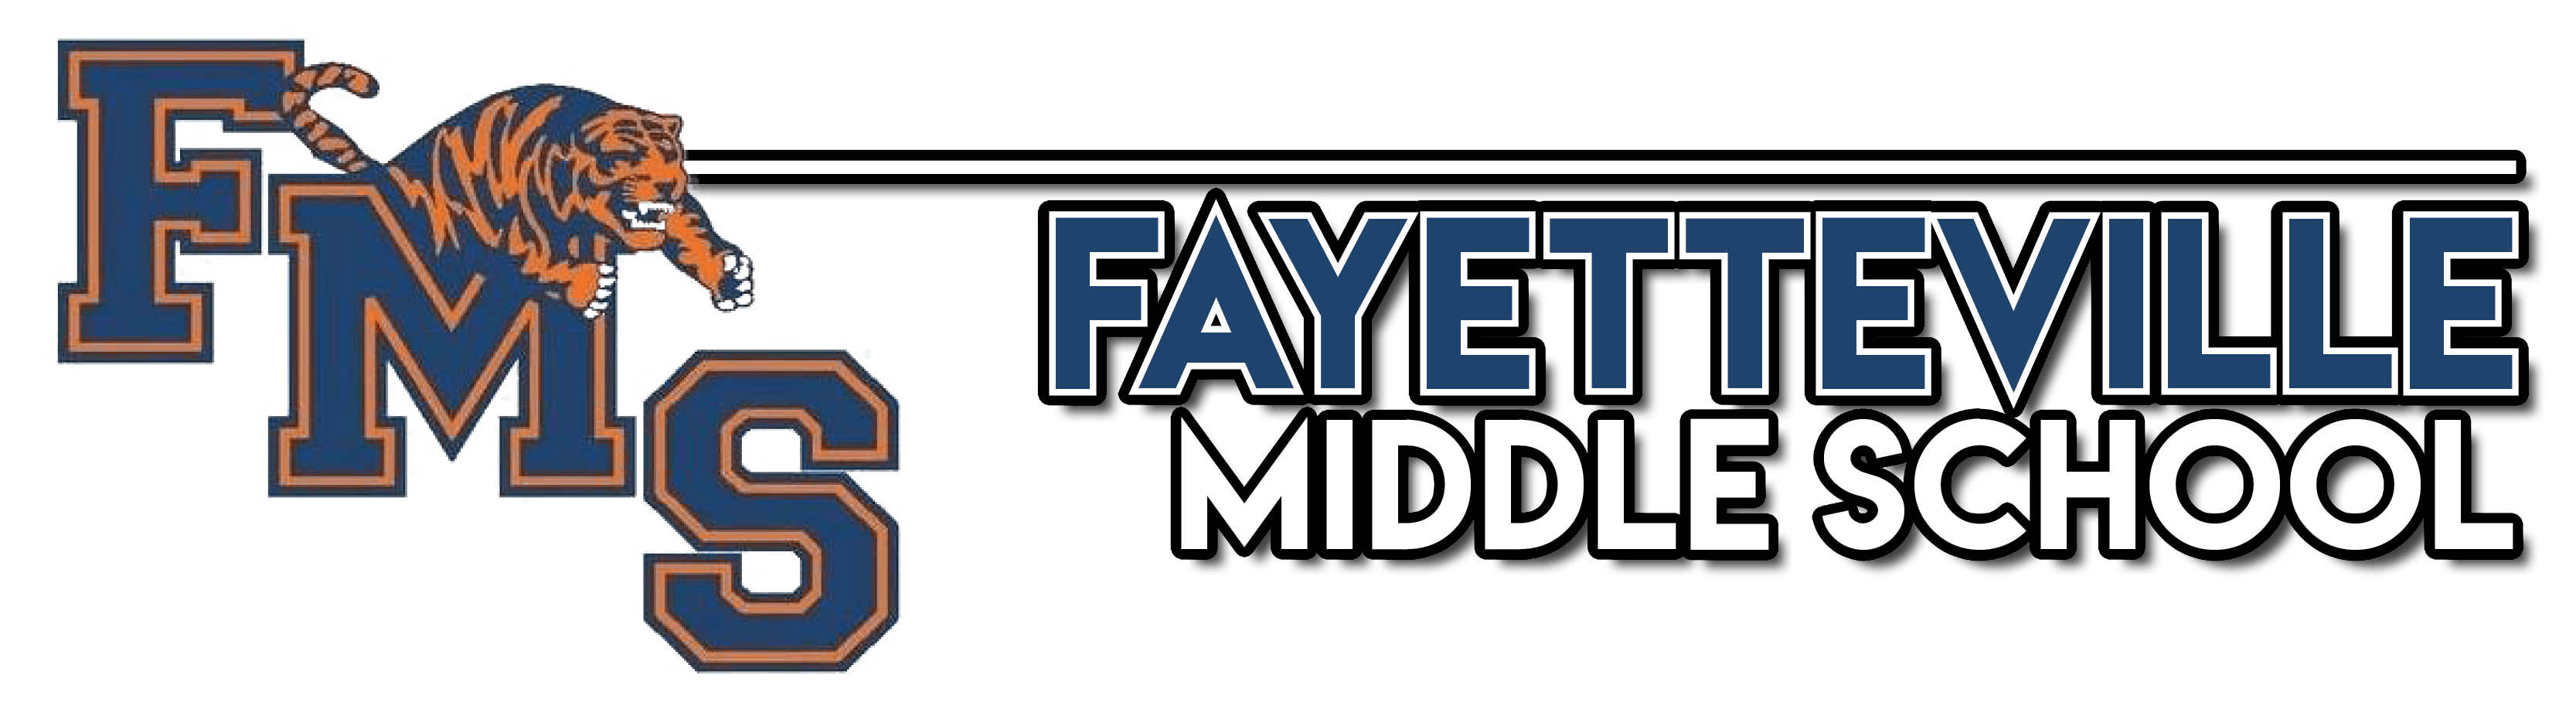 Fayetteville Logo - Fayetteville Middle School / Homepage